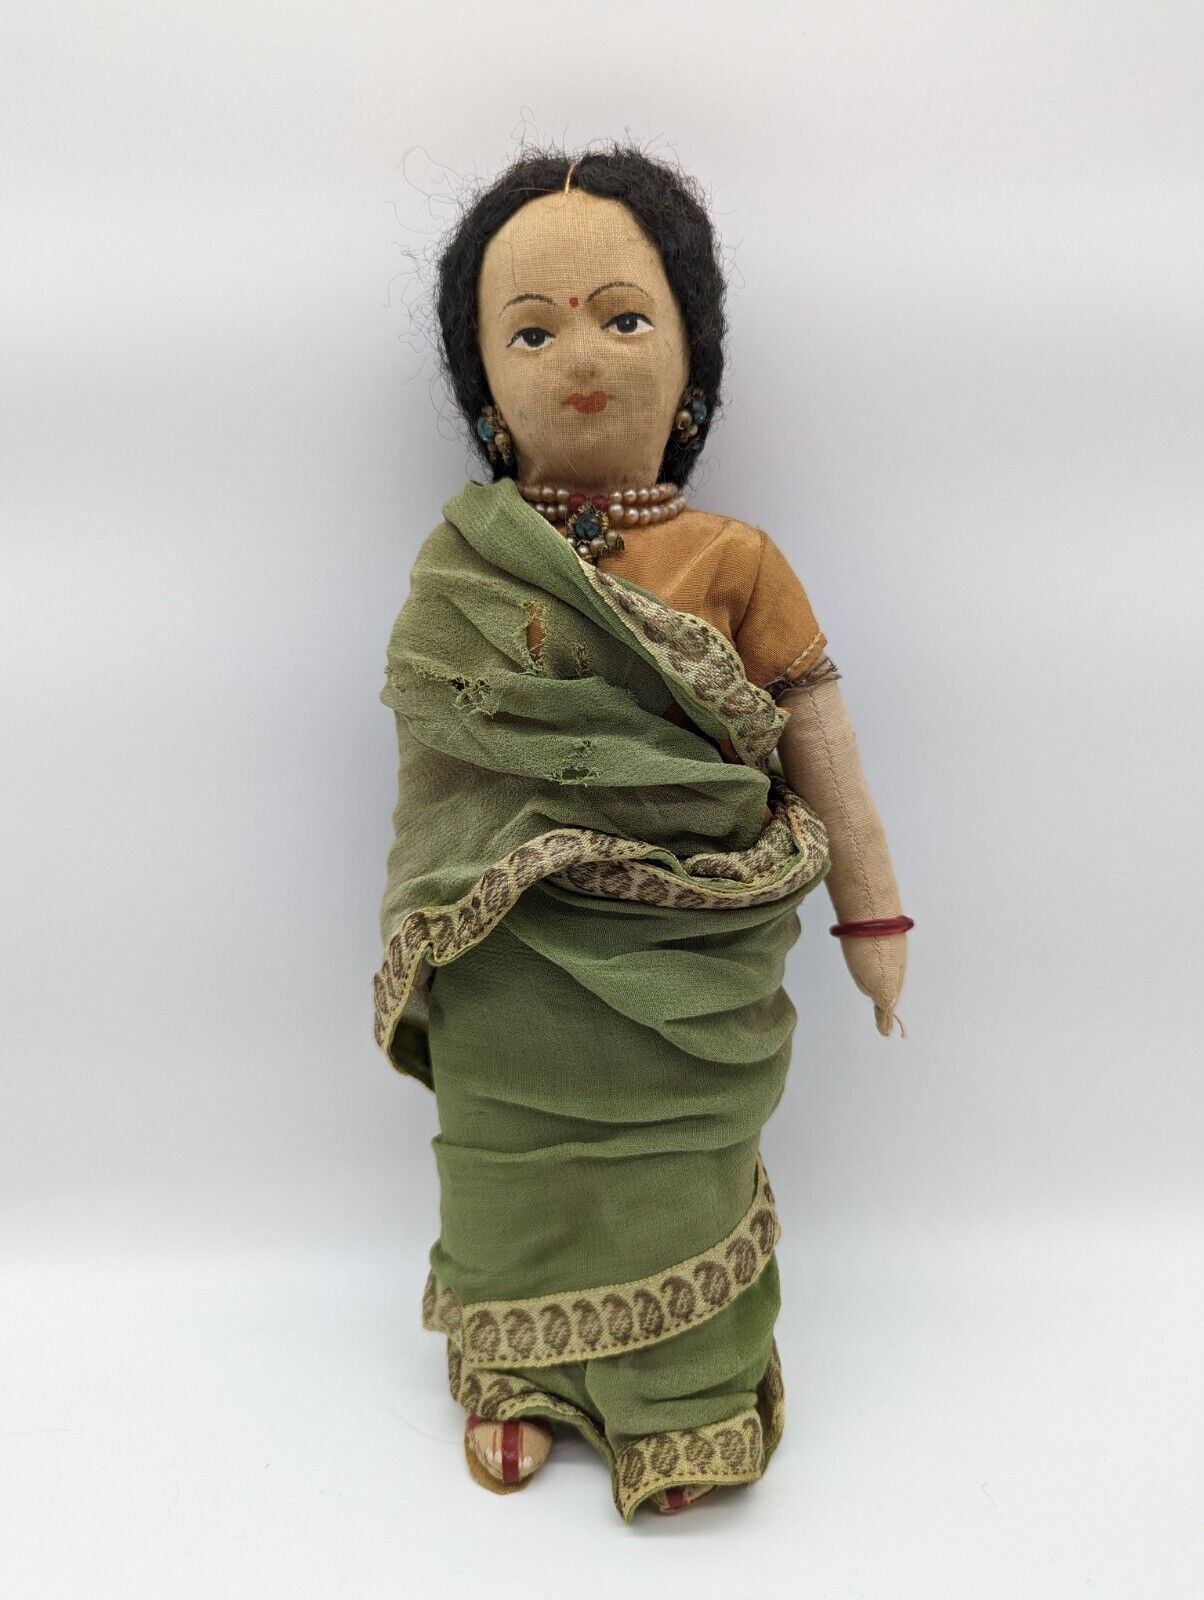 Vintage 1950s Handmade in India Cloth Bengali Maharashtrian Doll 10”